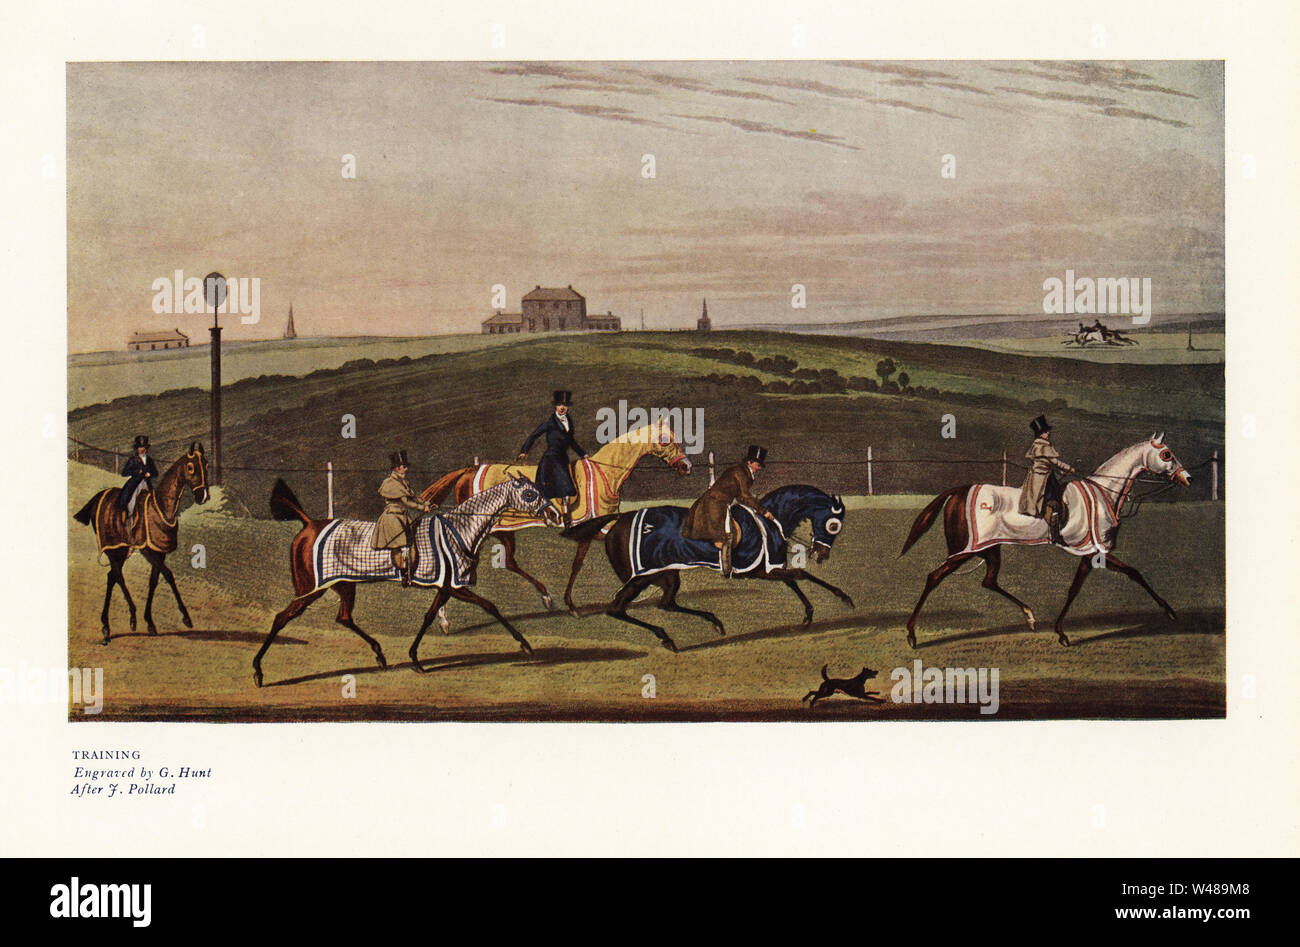 Jockeys Ausbildung von Pferden auf einer Rennstrecke. Farbe Drucken nach einem Stich von G. Jagd von eine Abbildung von James Pollard in Ralph Nevill's Old Sporting Drucke, den Kenner Magazine, London, 1908. Stockfoto